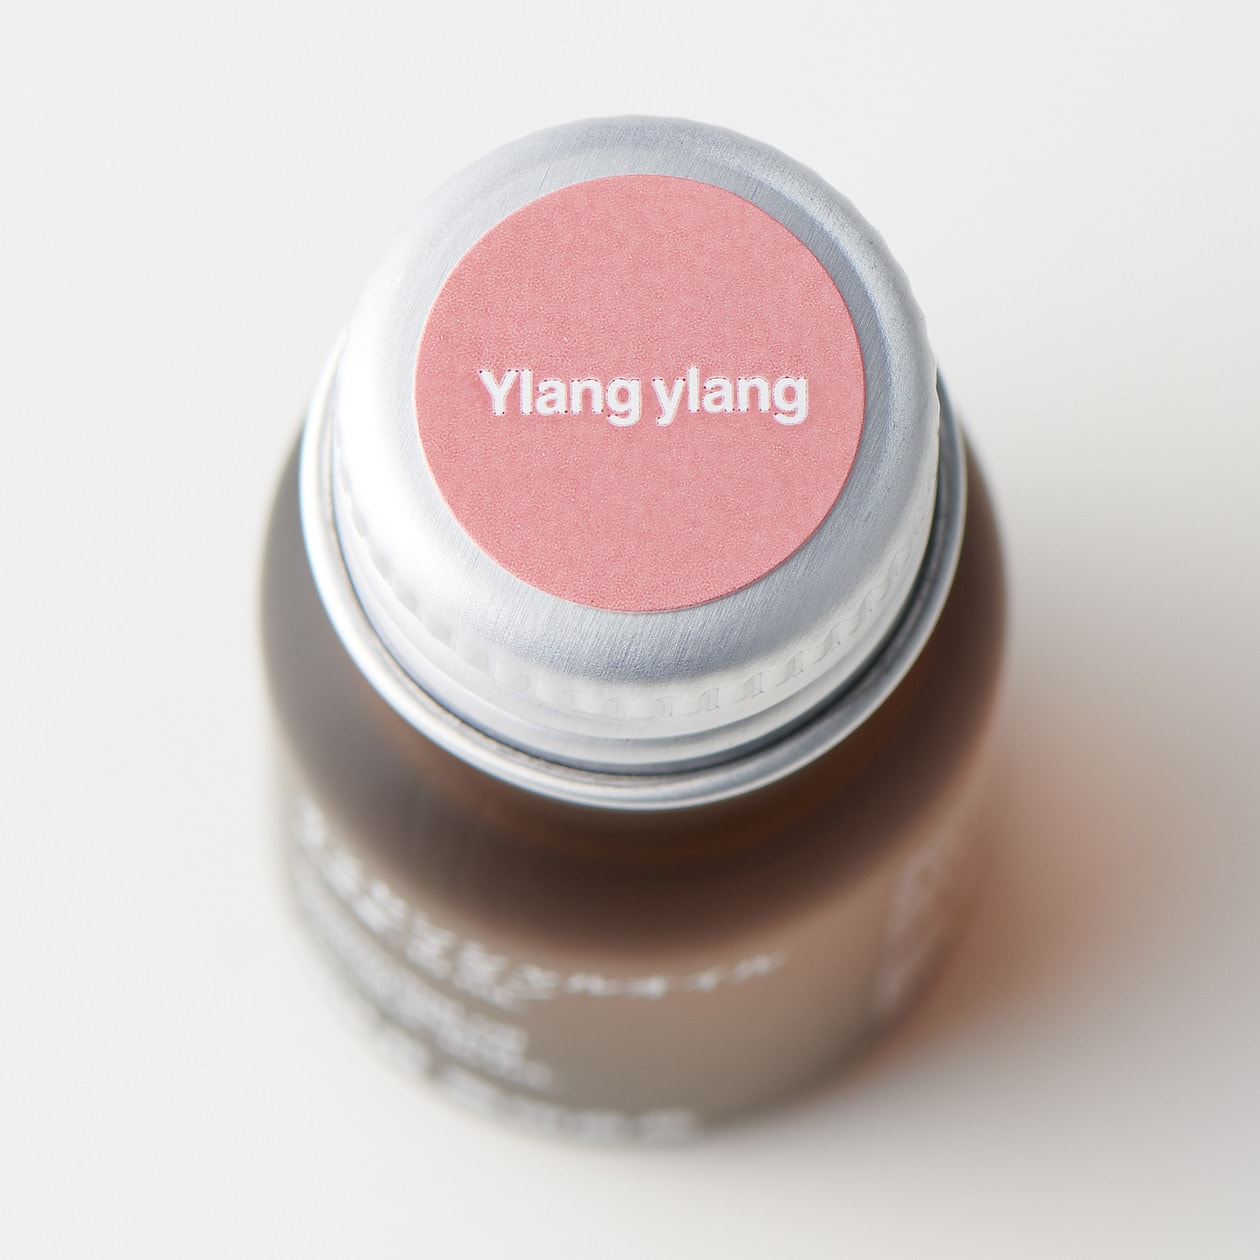 มูจิ น้ำมันหอมระเหย 10 มล. - MUJI Essential Oil 10 ML  scent Ylang Ylang